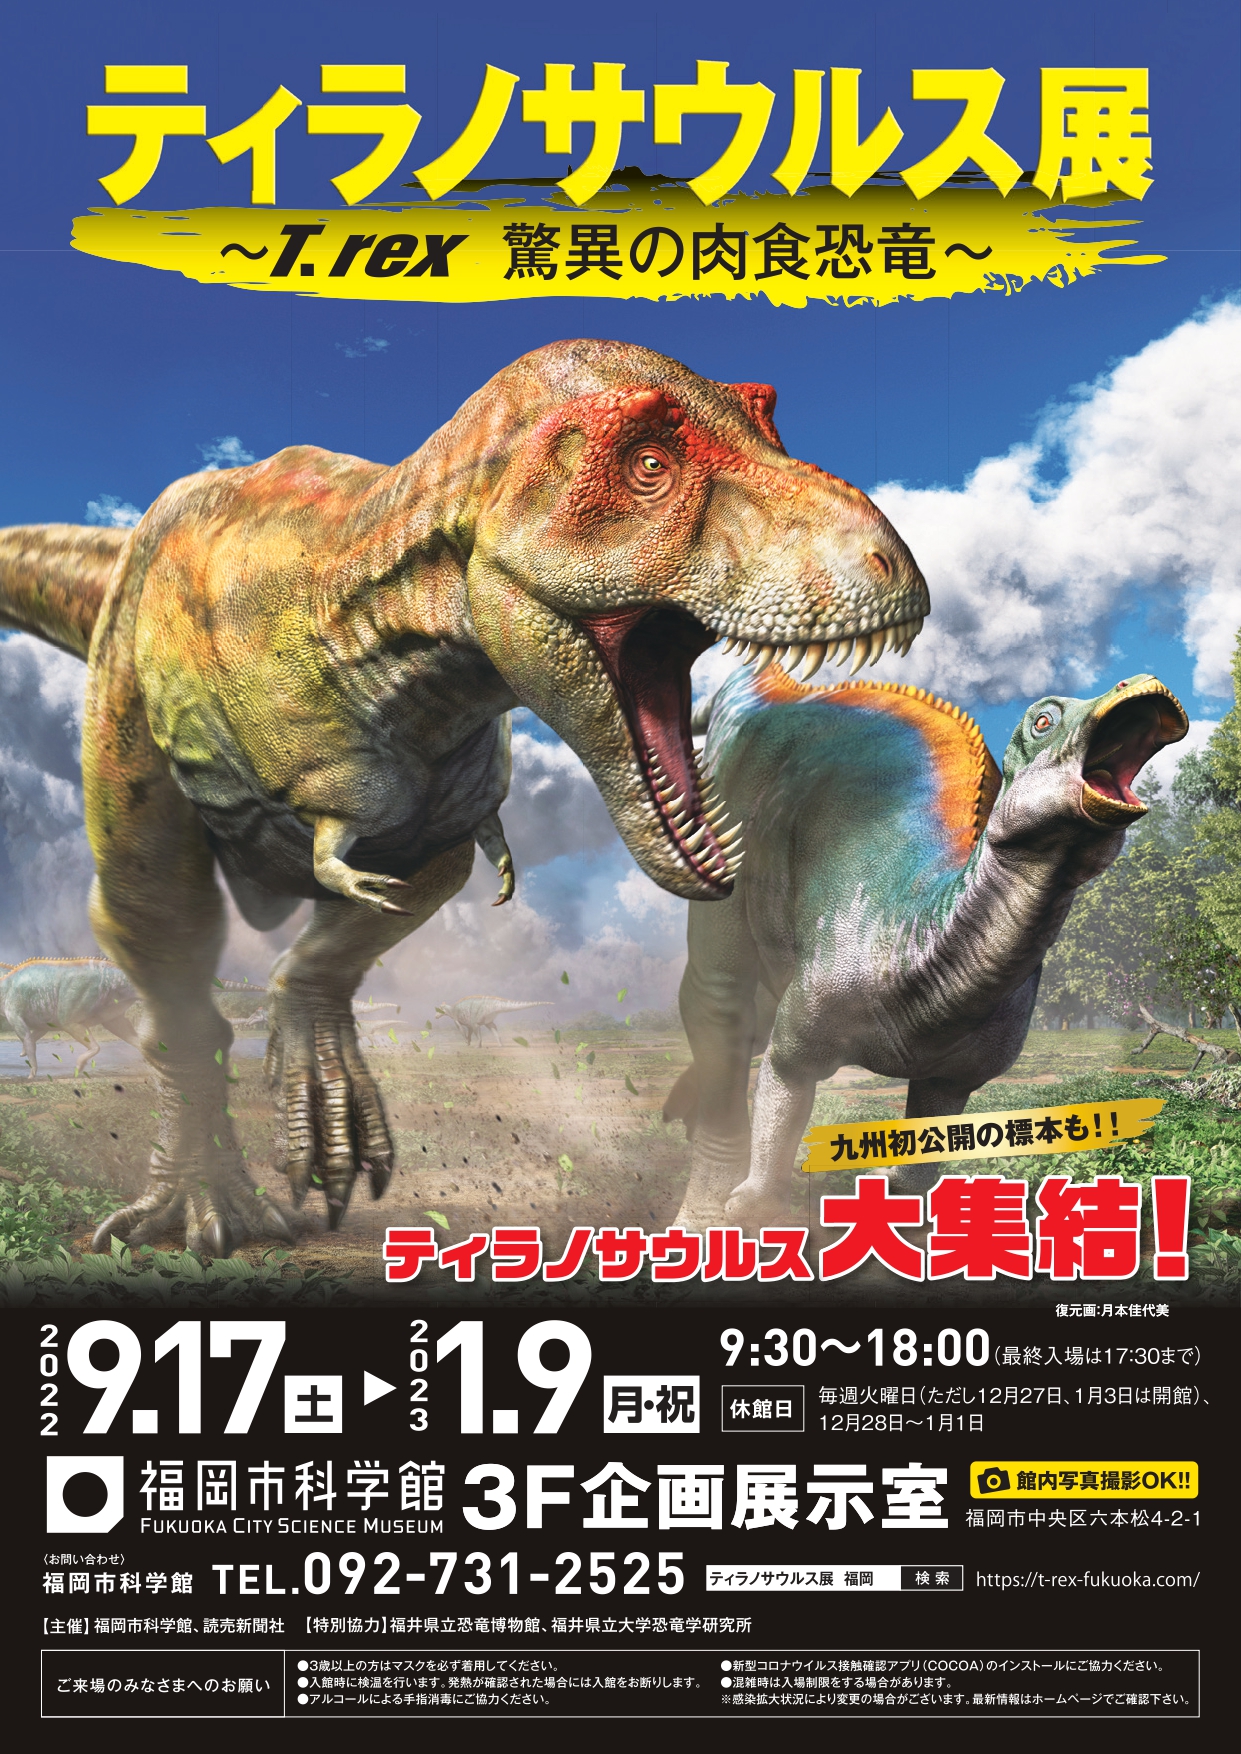 與福岡市科學館5週年特別展“暴龍展～T.rex驚人的食肉恐龍～”的相互折扣計劃